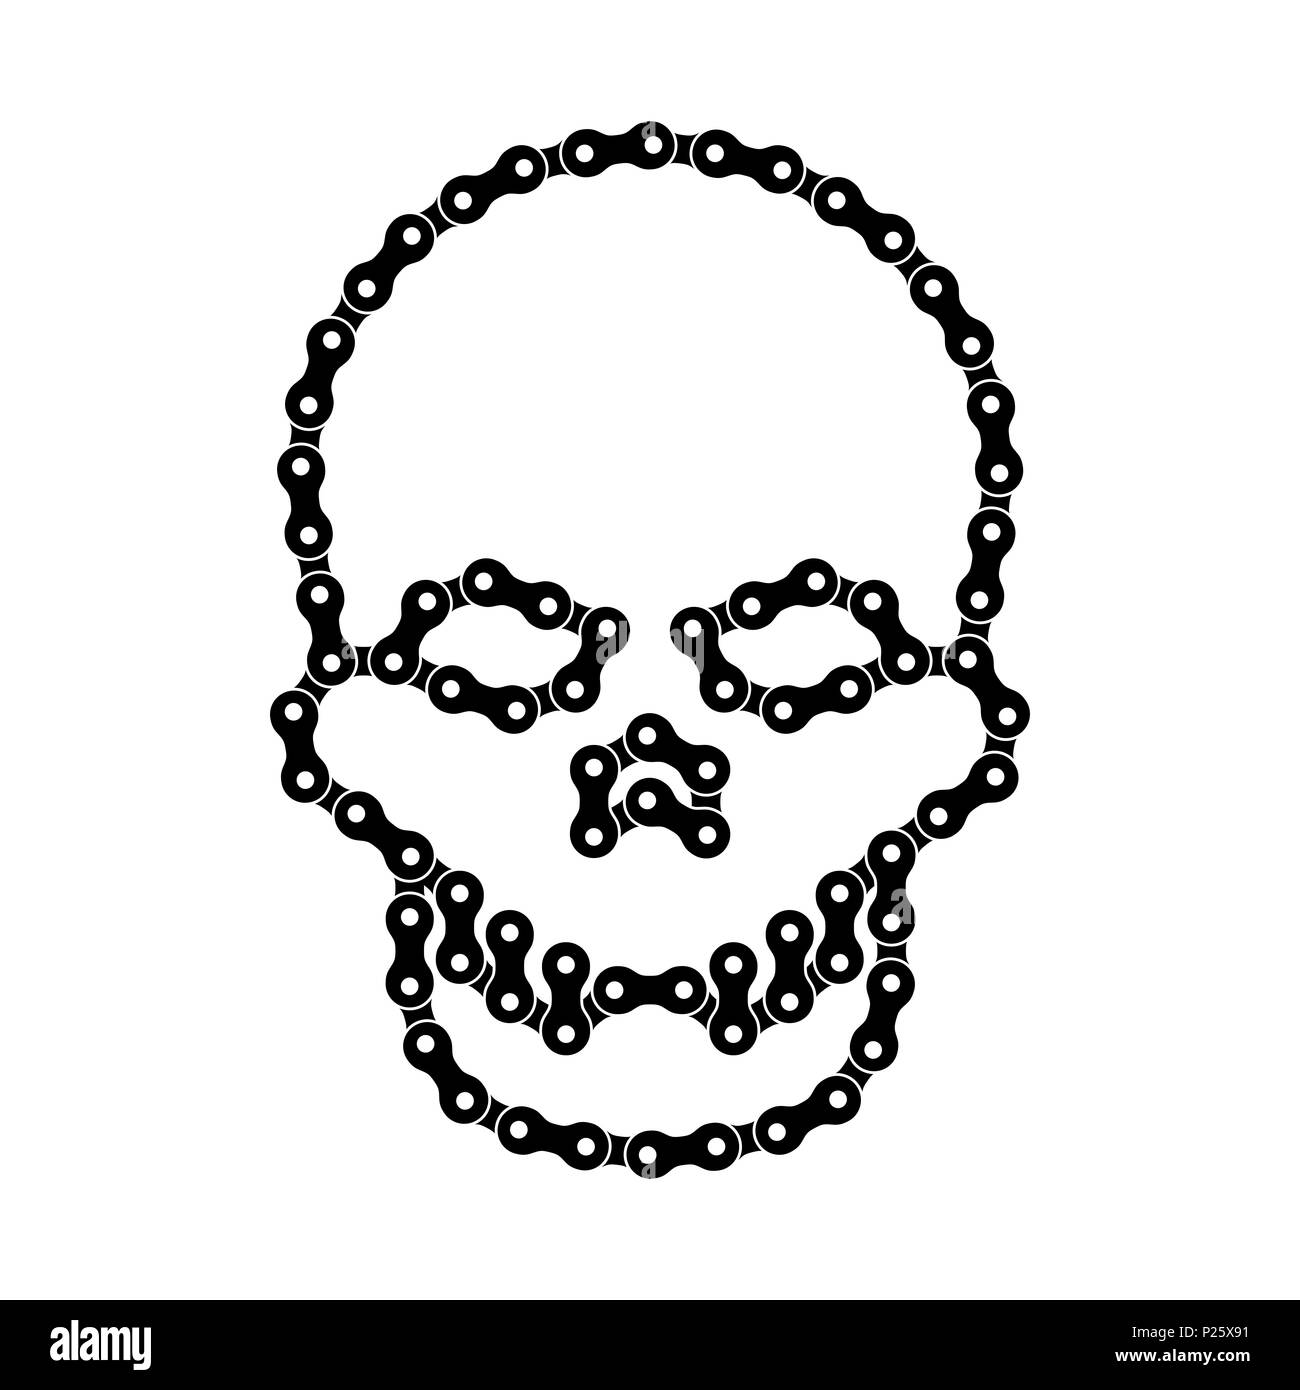 Menschlichen Schädel aus Bike oder Fahrrad Kette. Schädel oder Death Head Symbol. Schwarz Monochrome Fahrradkette Schädel für Grafikdesign, Webbanner, soziale Mich Stockfoto